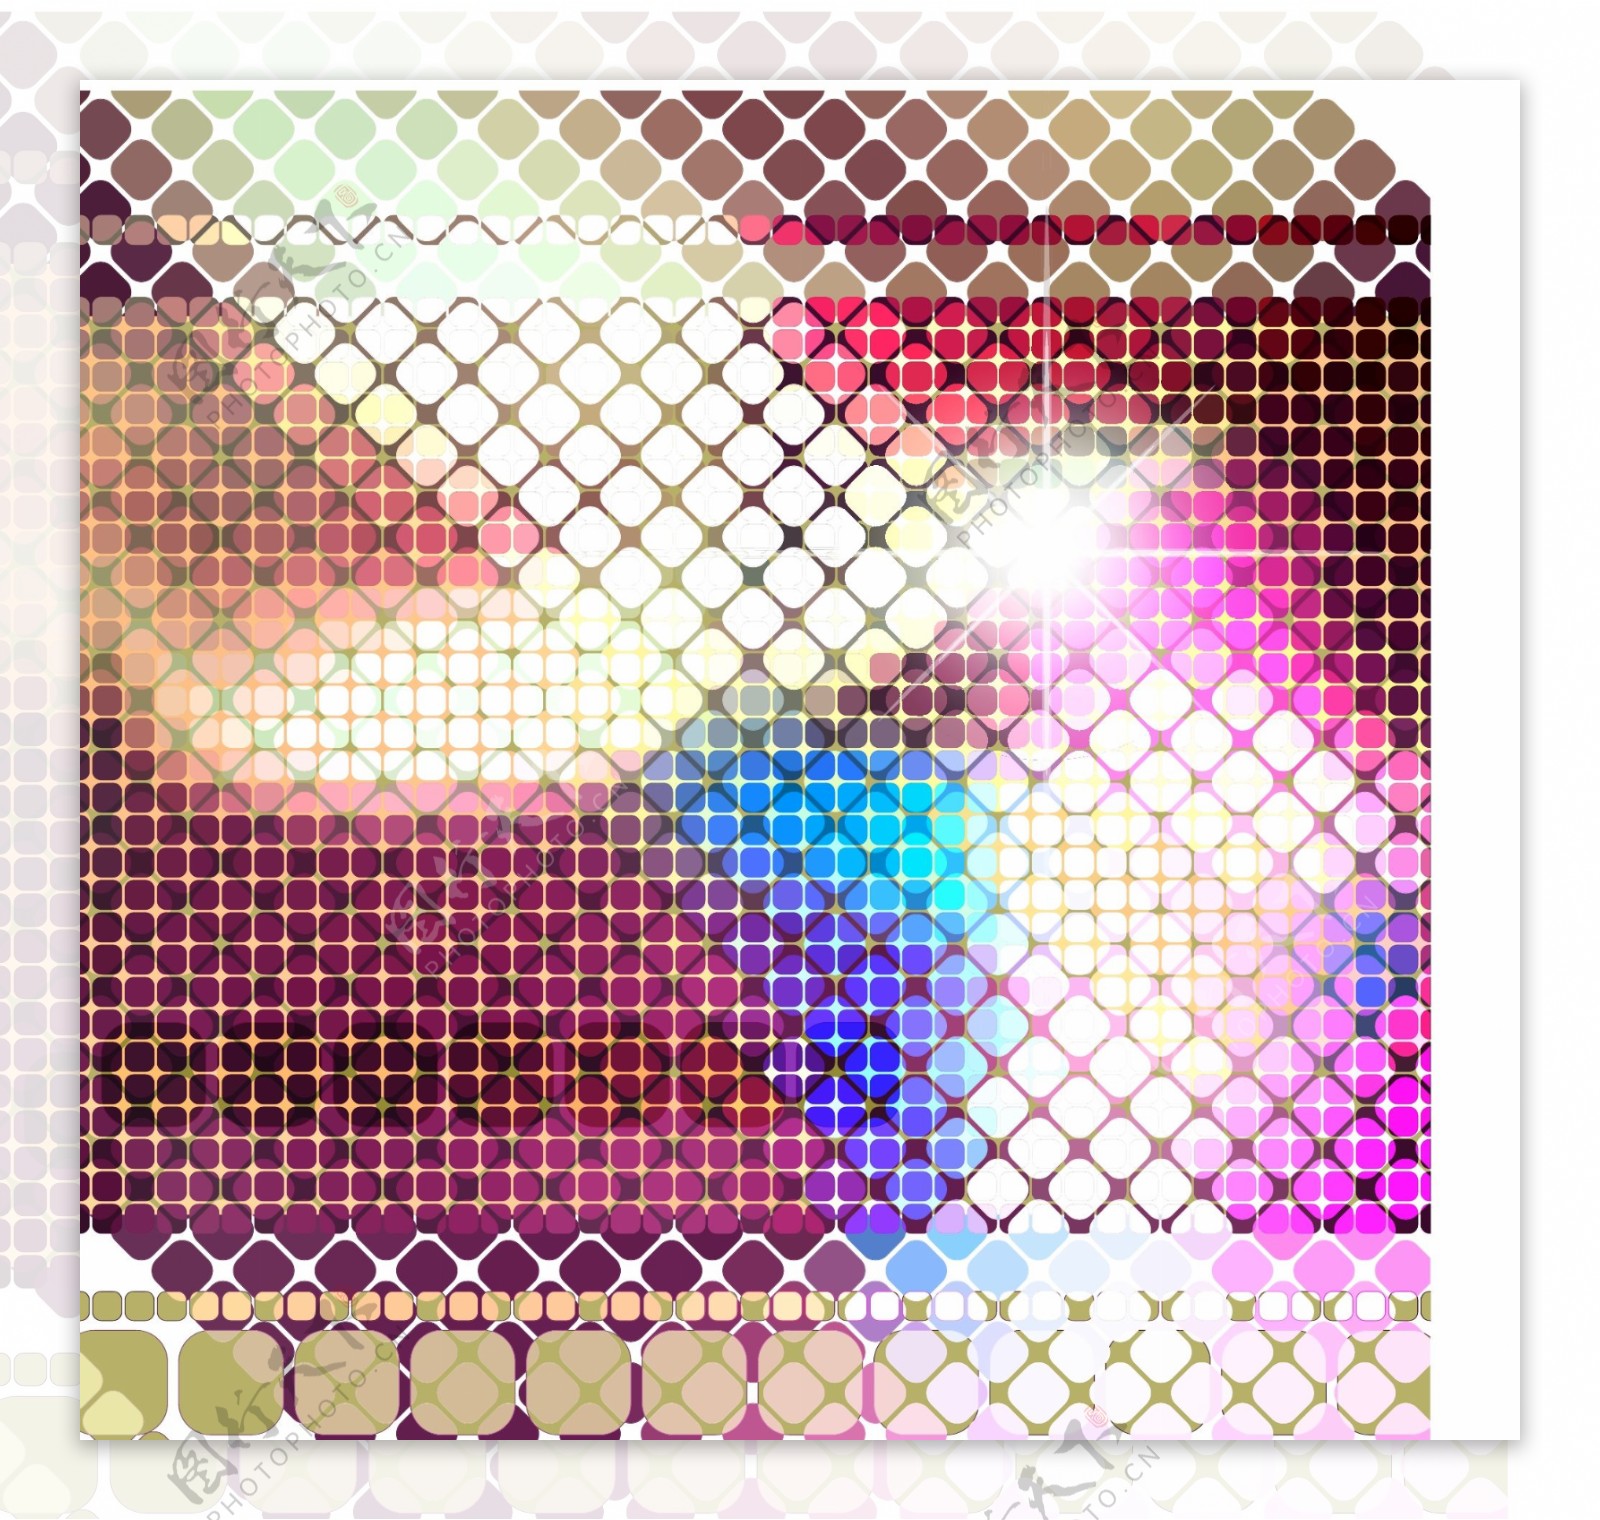 明亮的马赛克图案背景矢量素材4光明广场的明星